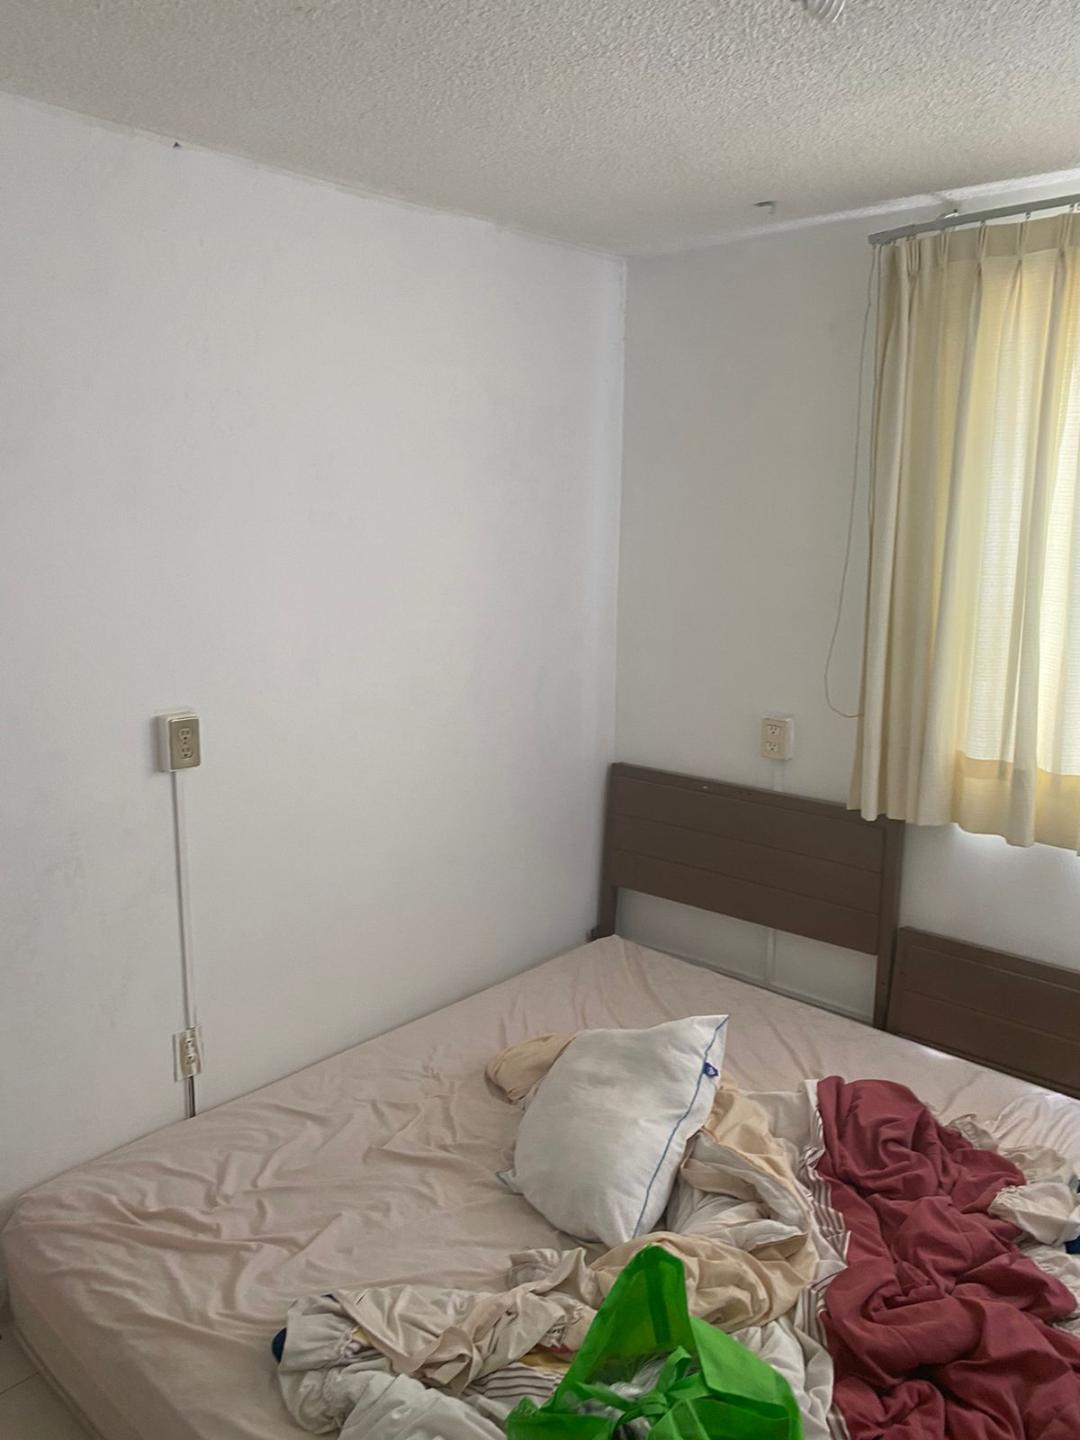 Corregidora 116, Ciudad de Mexico, 3 Bedrooms Bedrooms, ,1 BañoBathrooms,Apartamento,En Venta,Corregidora 116,1068